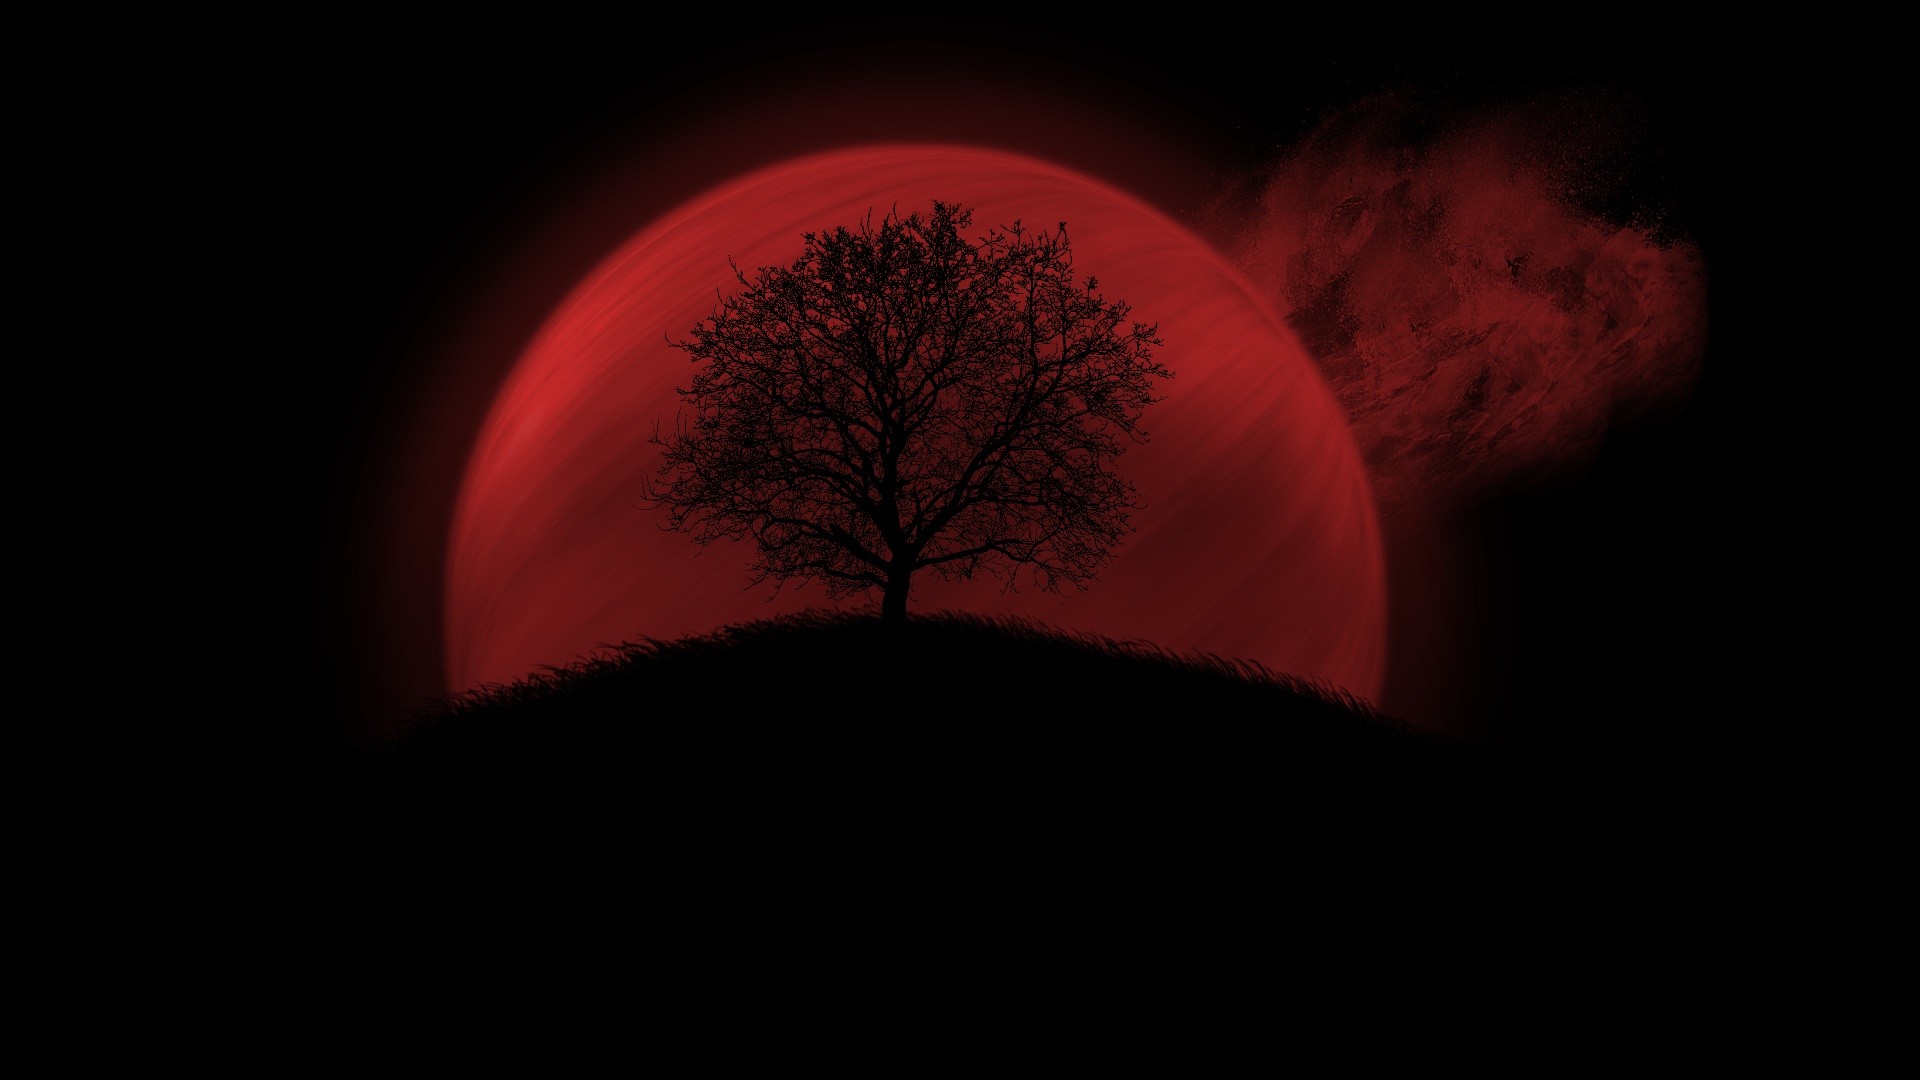 Hình nền mặt trăng đỏ sẽ khiến bạn say đắm trong không gian siêu thực và kỳ lạ. Được chụp từ những góc độ và màu sắc khác nhau, những bức ảnh này đem lại cho người xem cảm giác độc đáo và nhiều bất ngờ. Hãy tải xuống và trang trí màn hình của bạn ngay hôm nay!